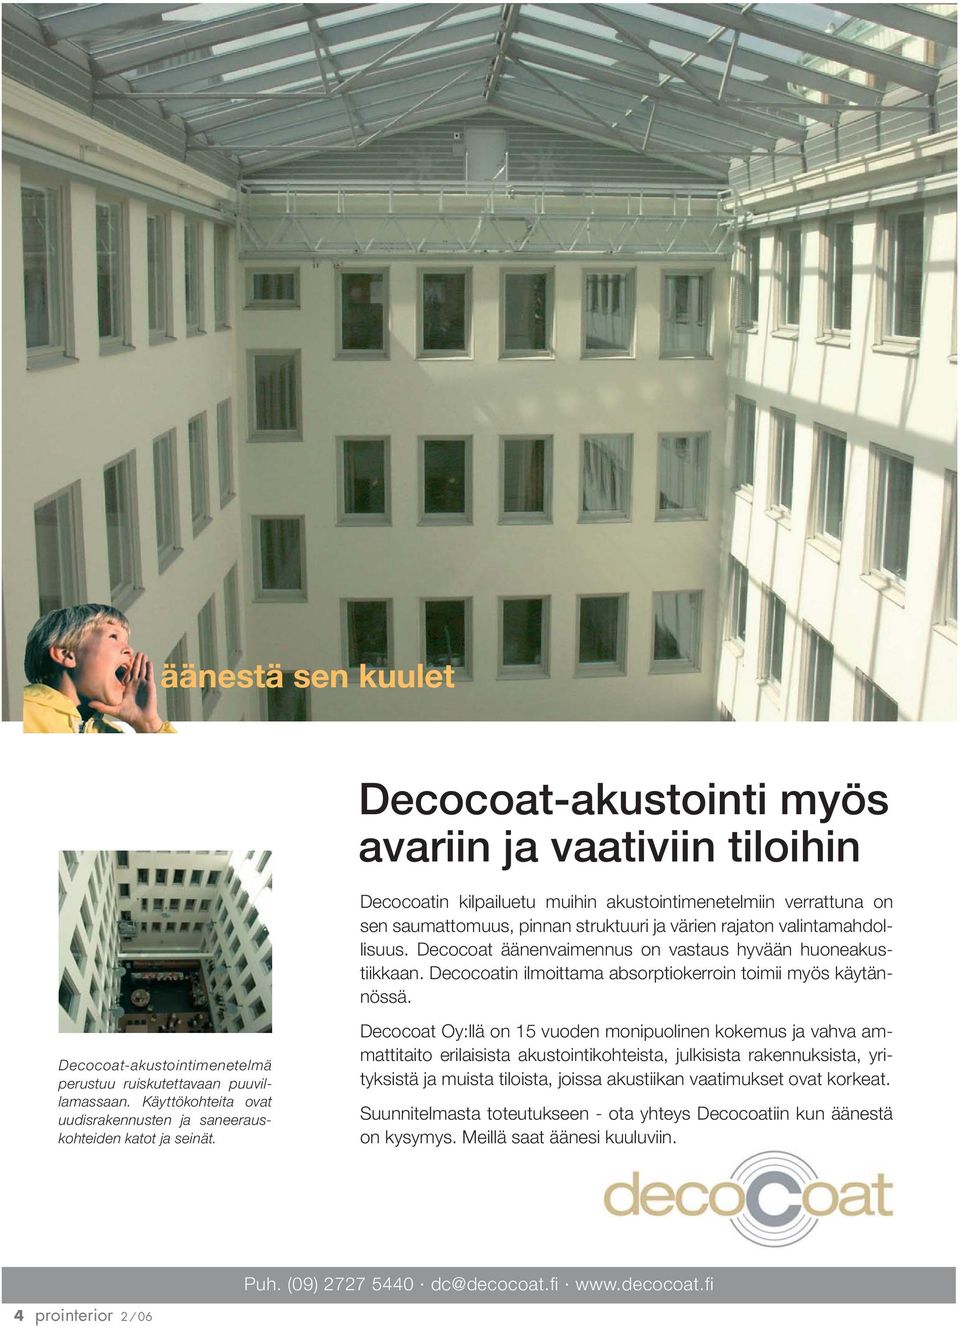 Decocoat-akustointimenetelmä perustuu ruiskutettavaan puuvillamassaan. Käyttökohteita ovat uudisrakennusten ja saneerauskohteiden katot ja seinät.